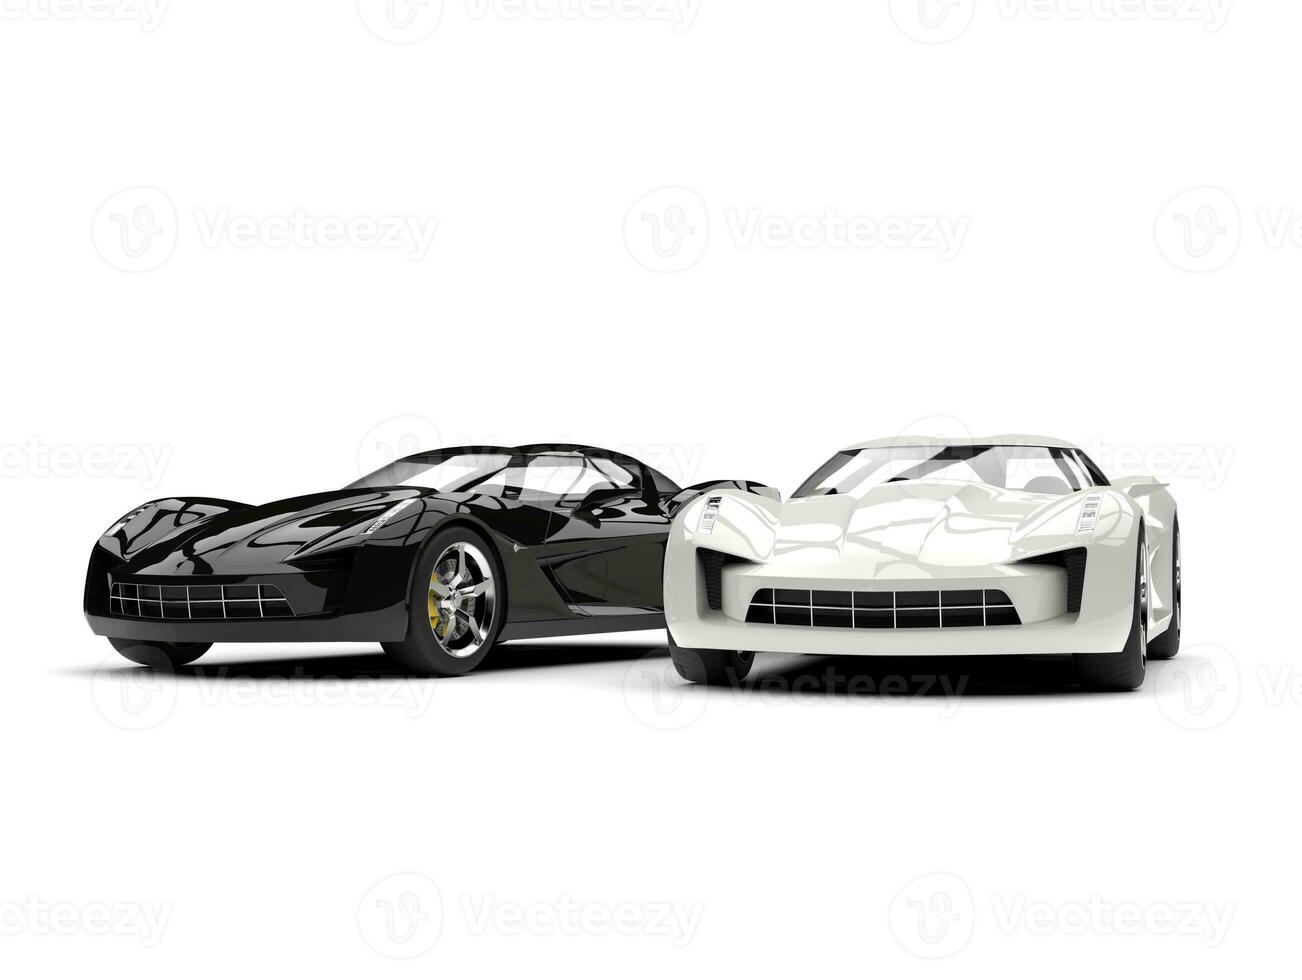 svart och vit super sporter begrepp bilar foto